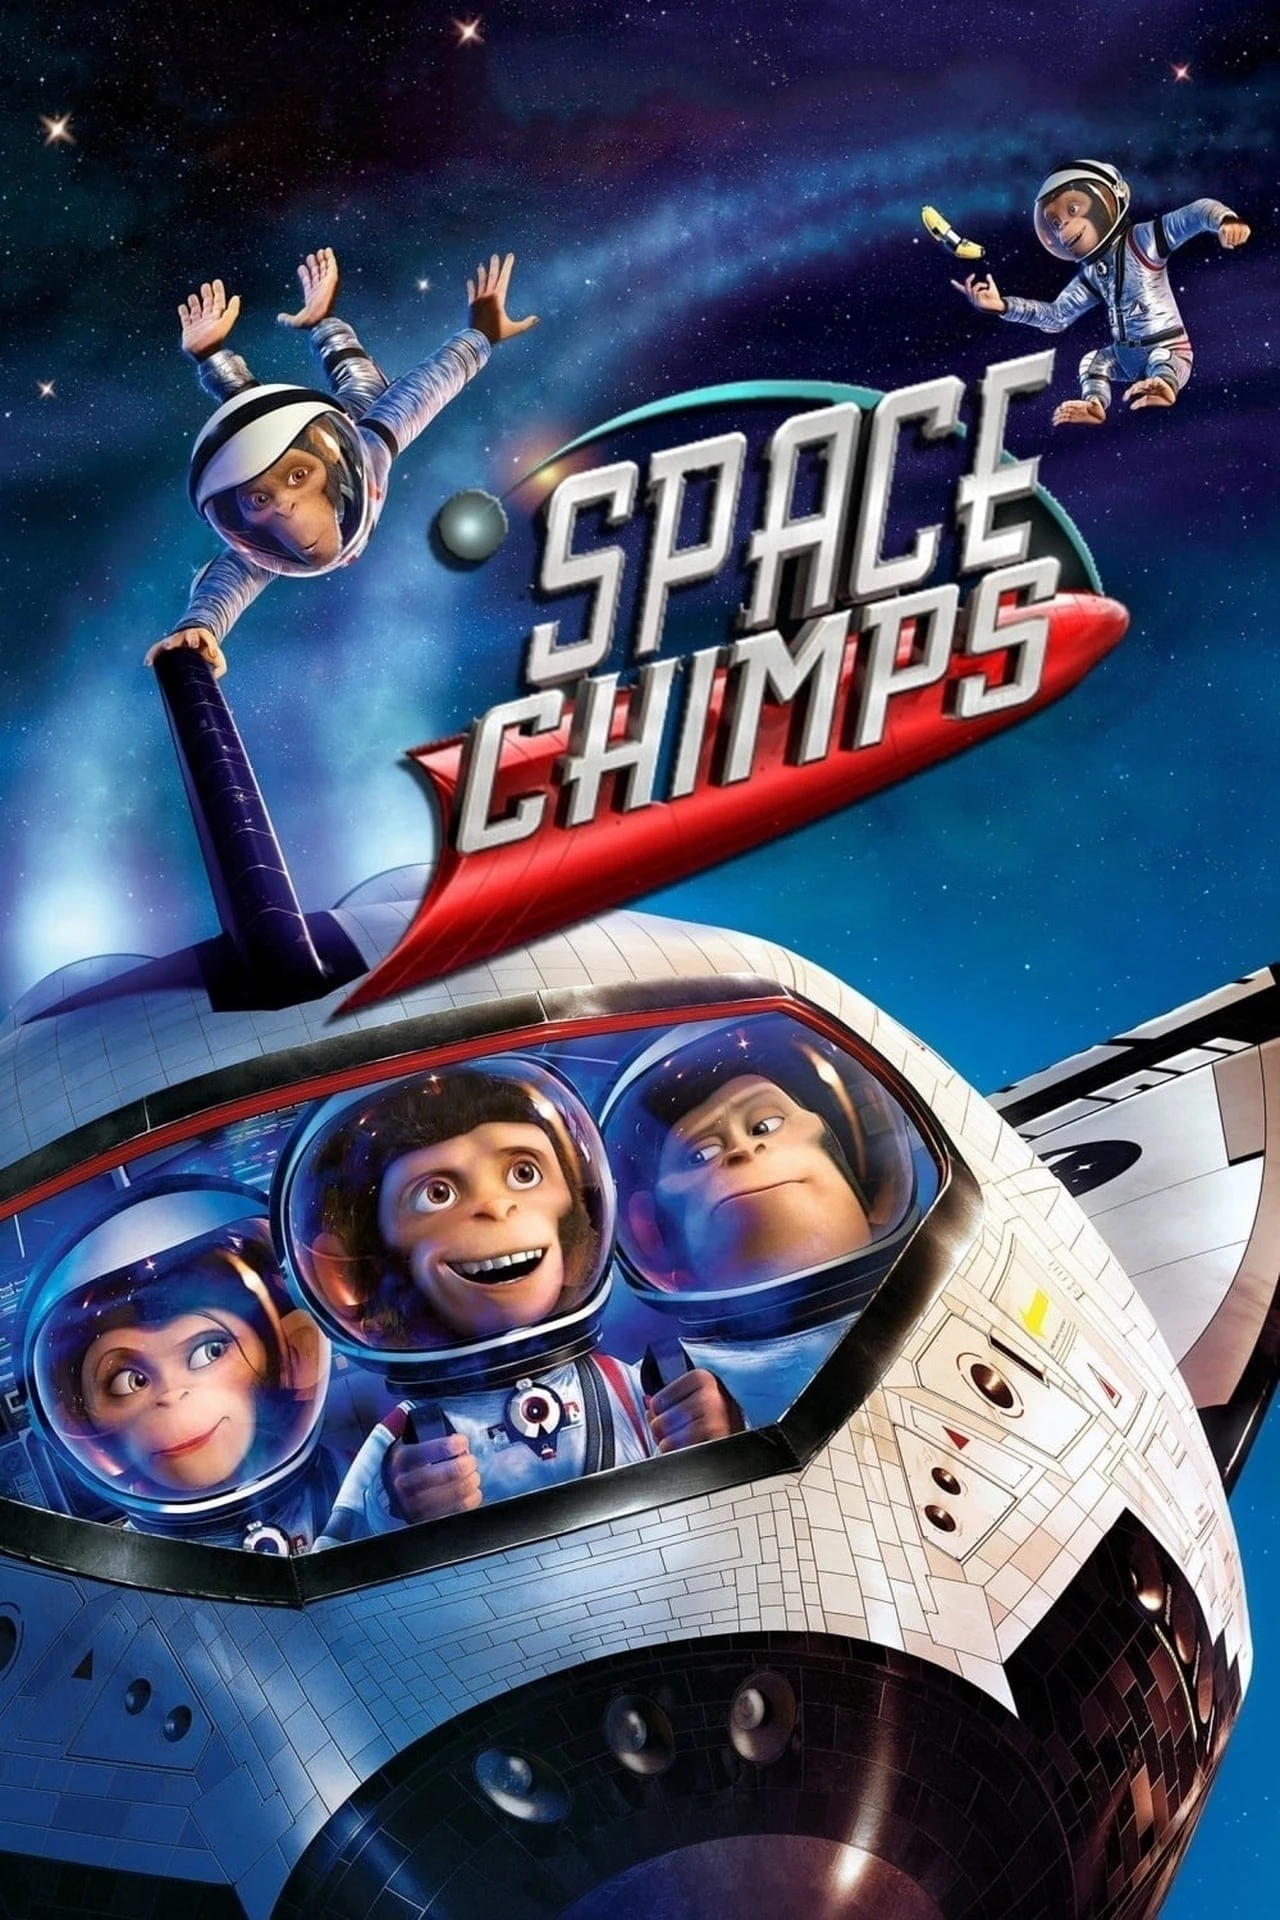 Space Chimps | Space Chimps (2008)